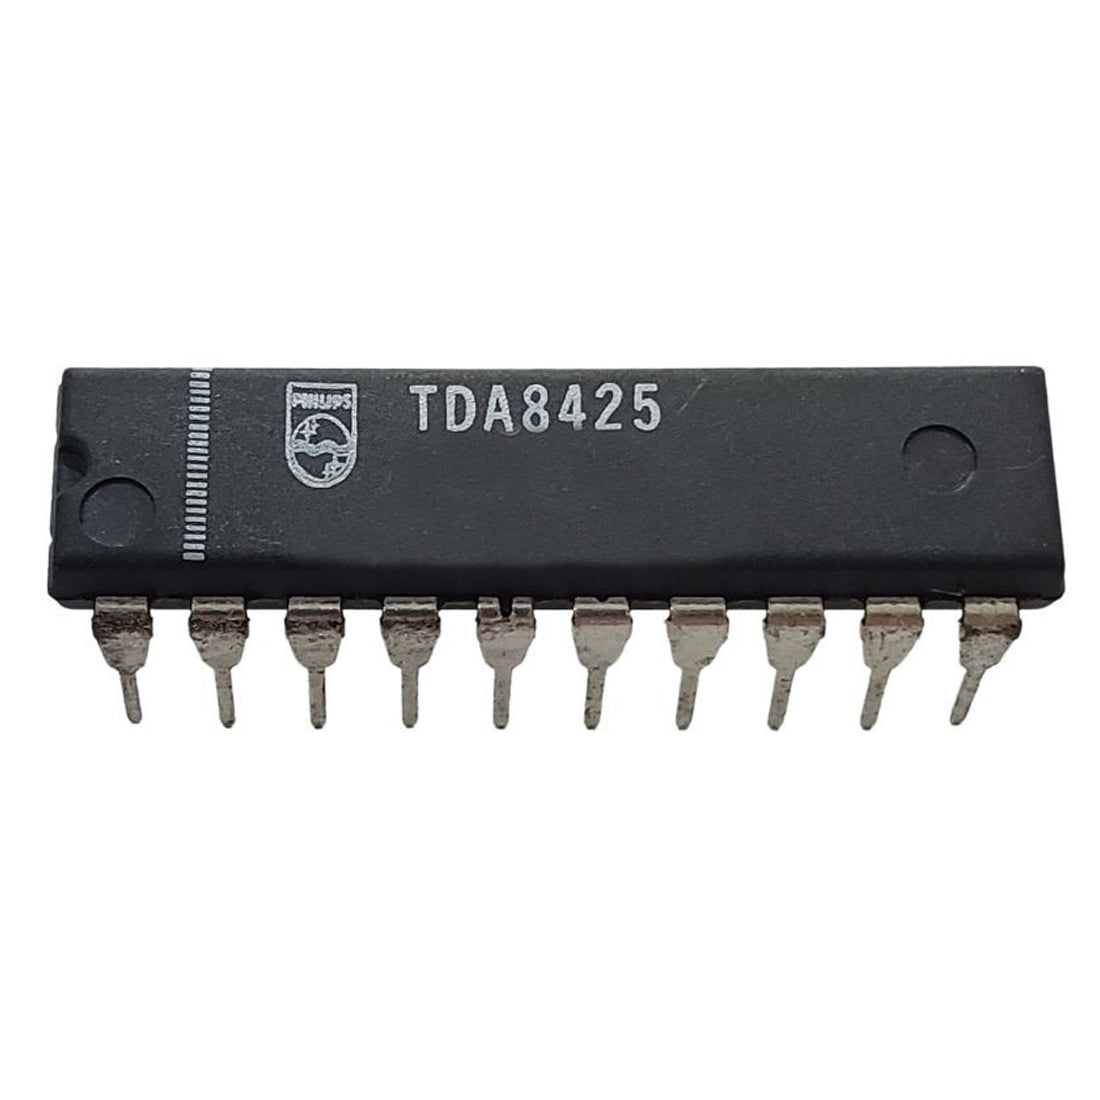 PHILIPS TDA8425 Componente elettronico, circuito integrato, 20 contatti